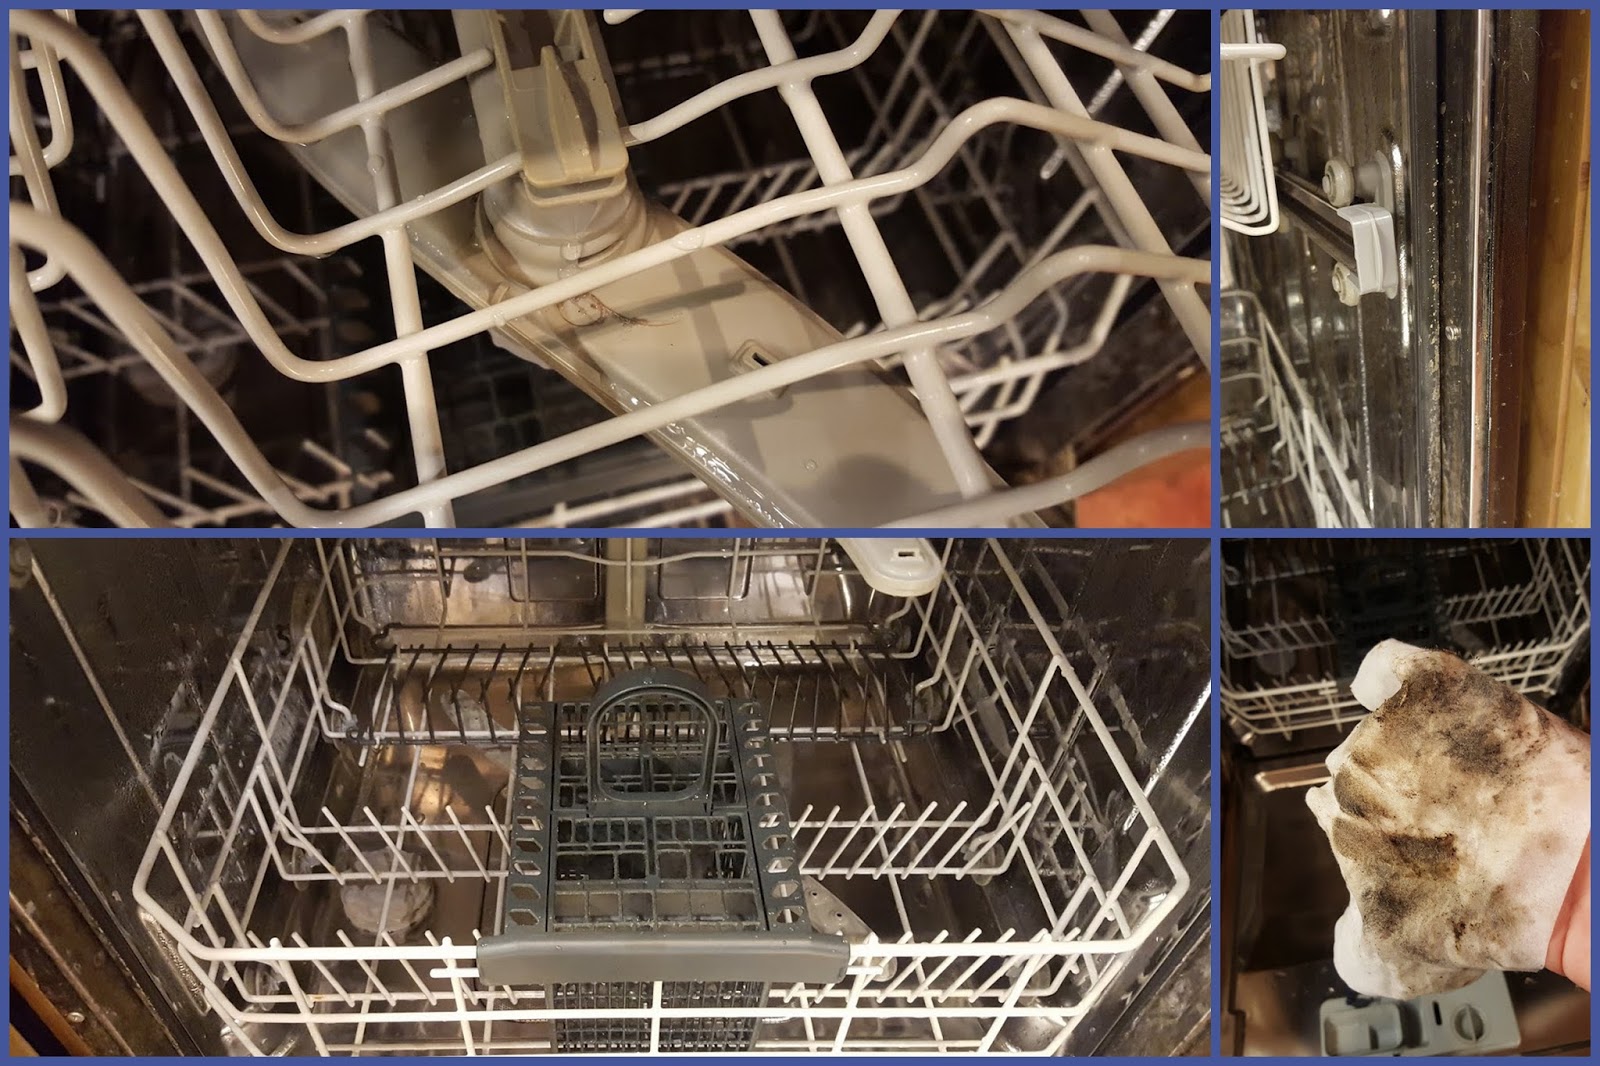 Service-it Deep Clean Dishwasher Cleaner 75g + wipe - Dr. Beckmann